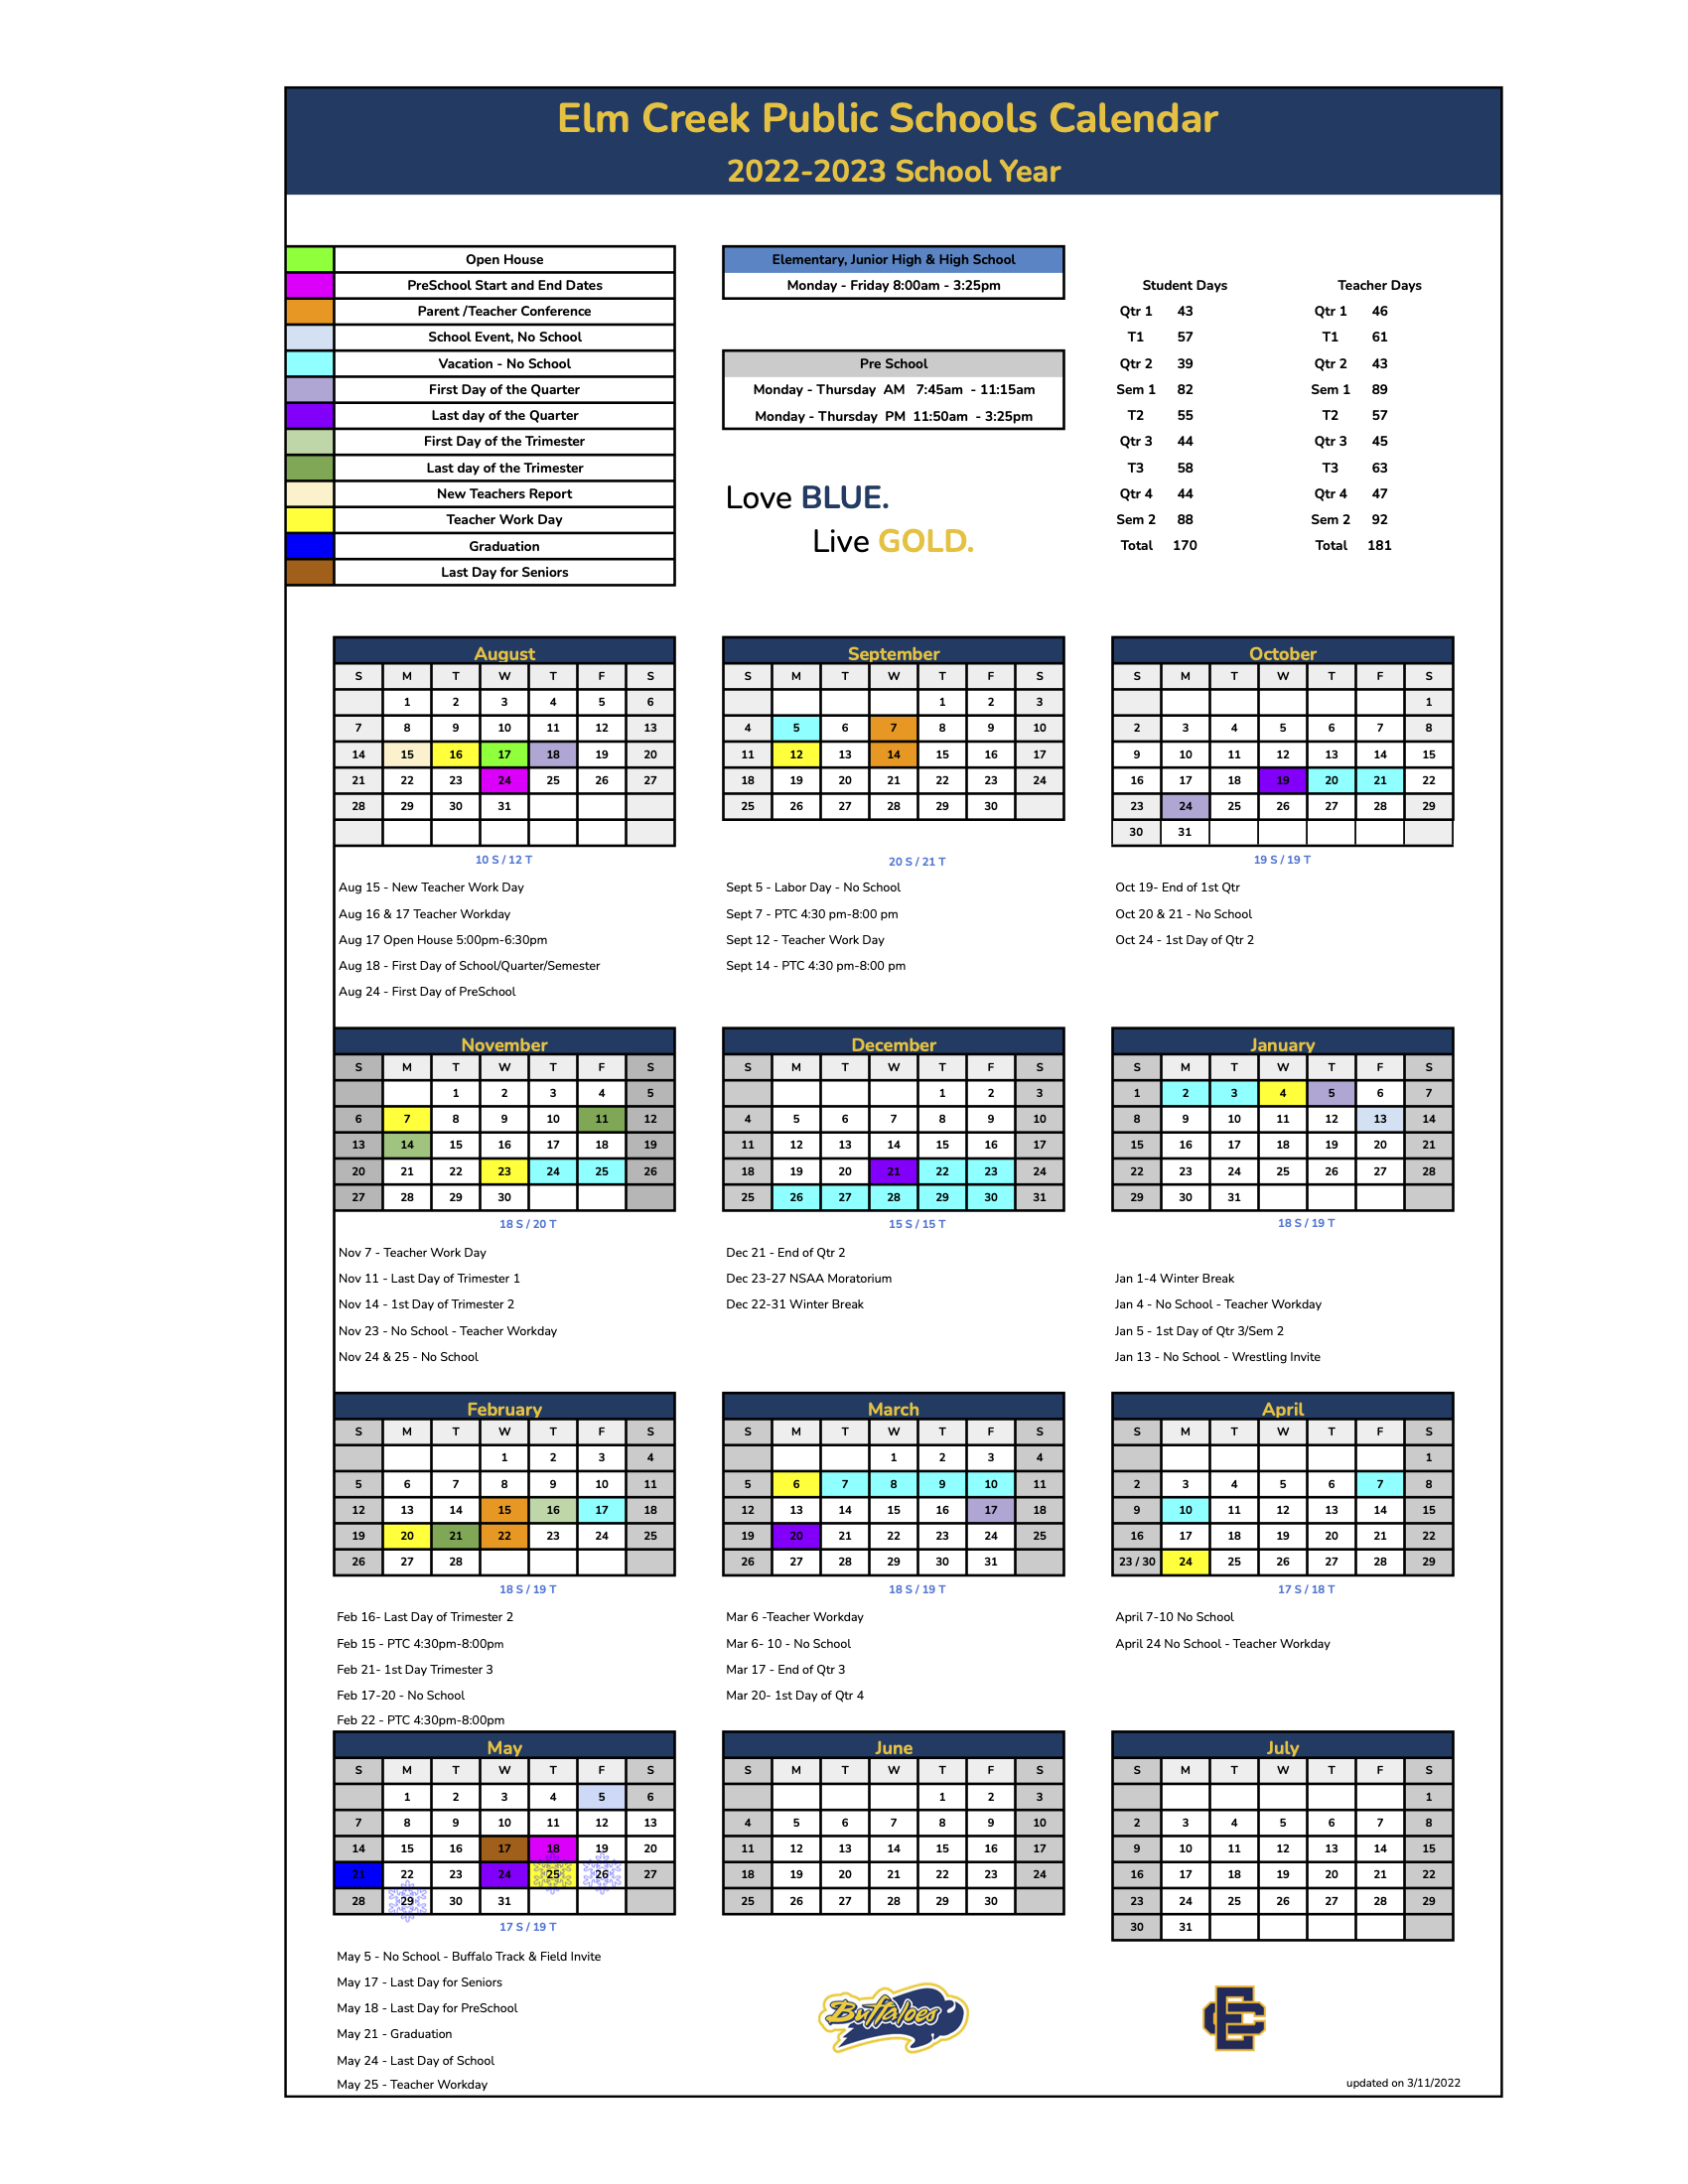 Elm Creek Public Schools Calendar 2022 and 2023 PublicHolidays com